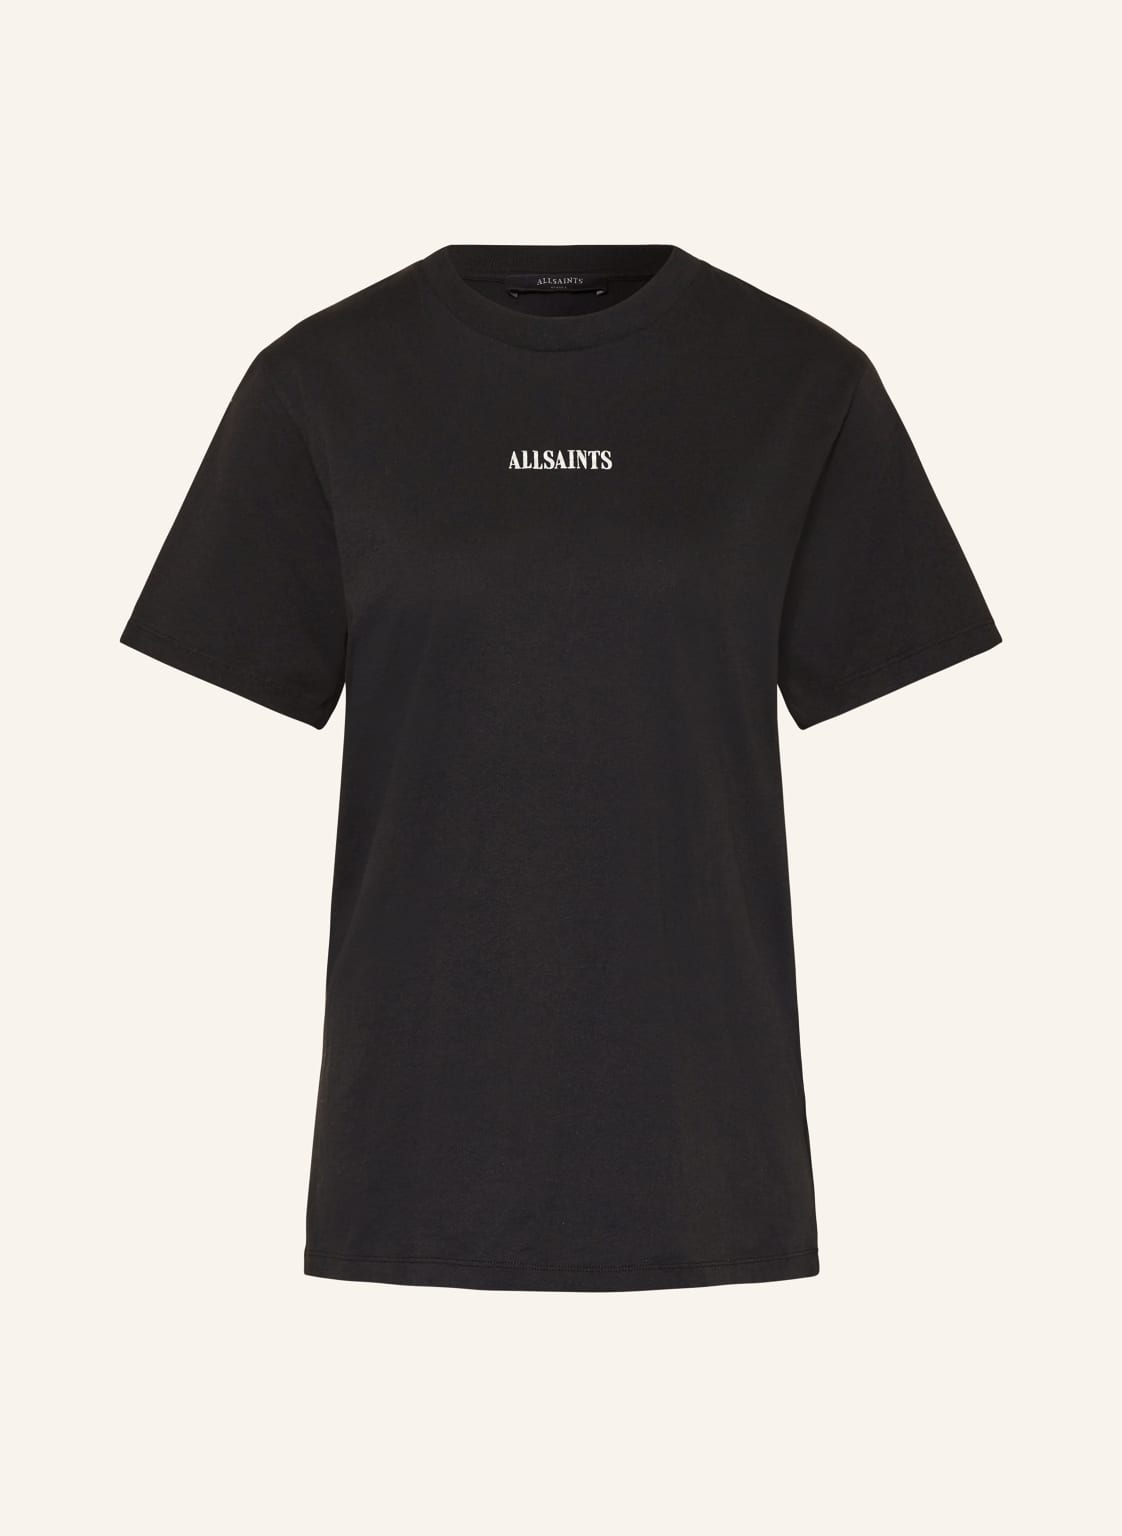 Allsaints T-Shirt Fortuna schwarz von AllSaints